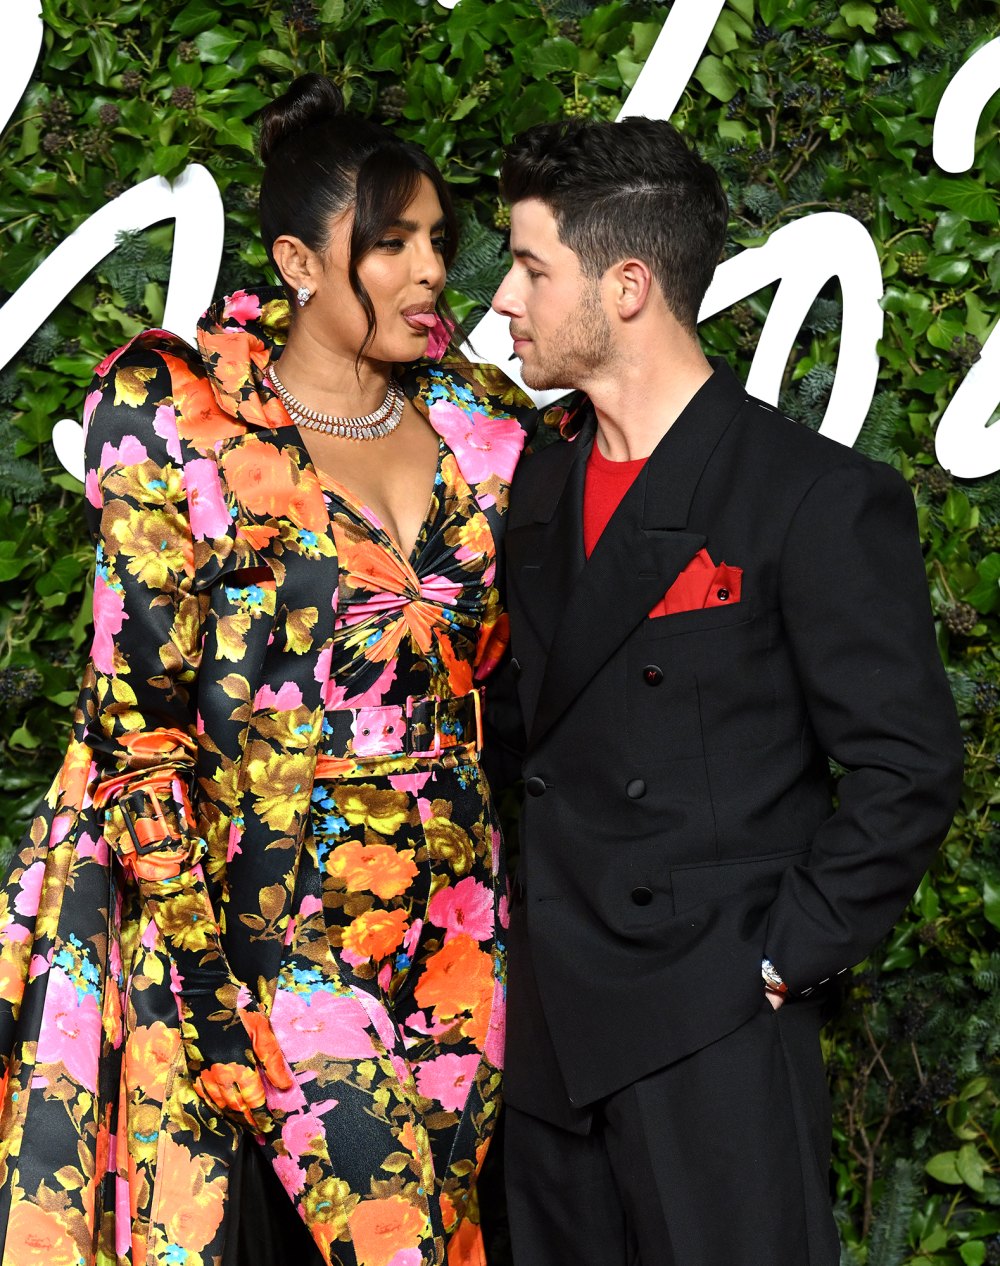 Nick Jonas liebt es, wie Tochter Malti die „schalkhafte Einstellung“ von Frau Priyanka Chopra geerbt hat